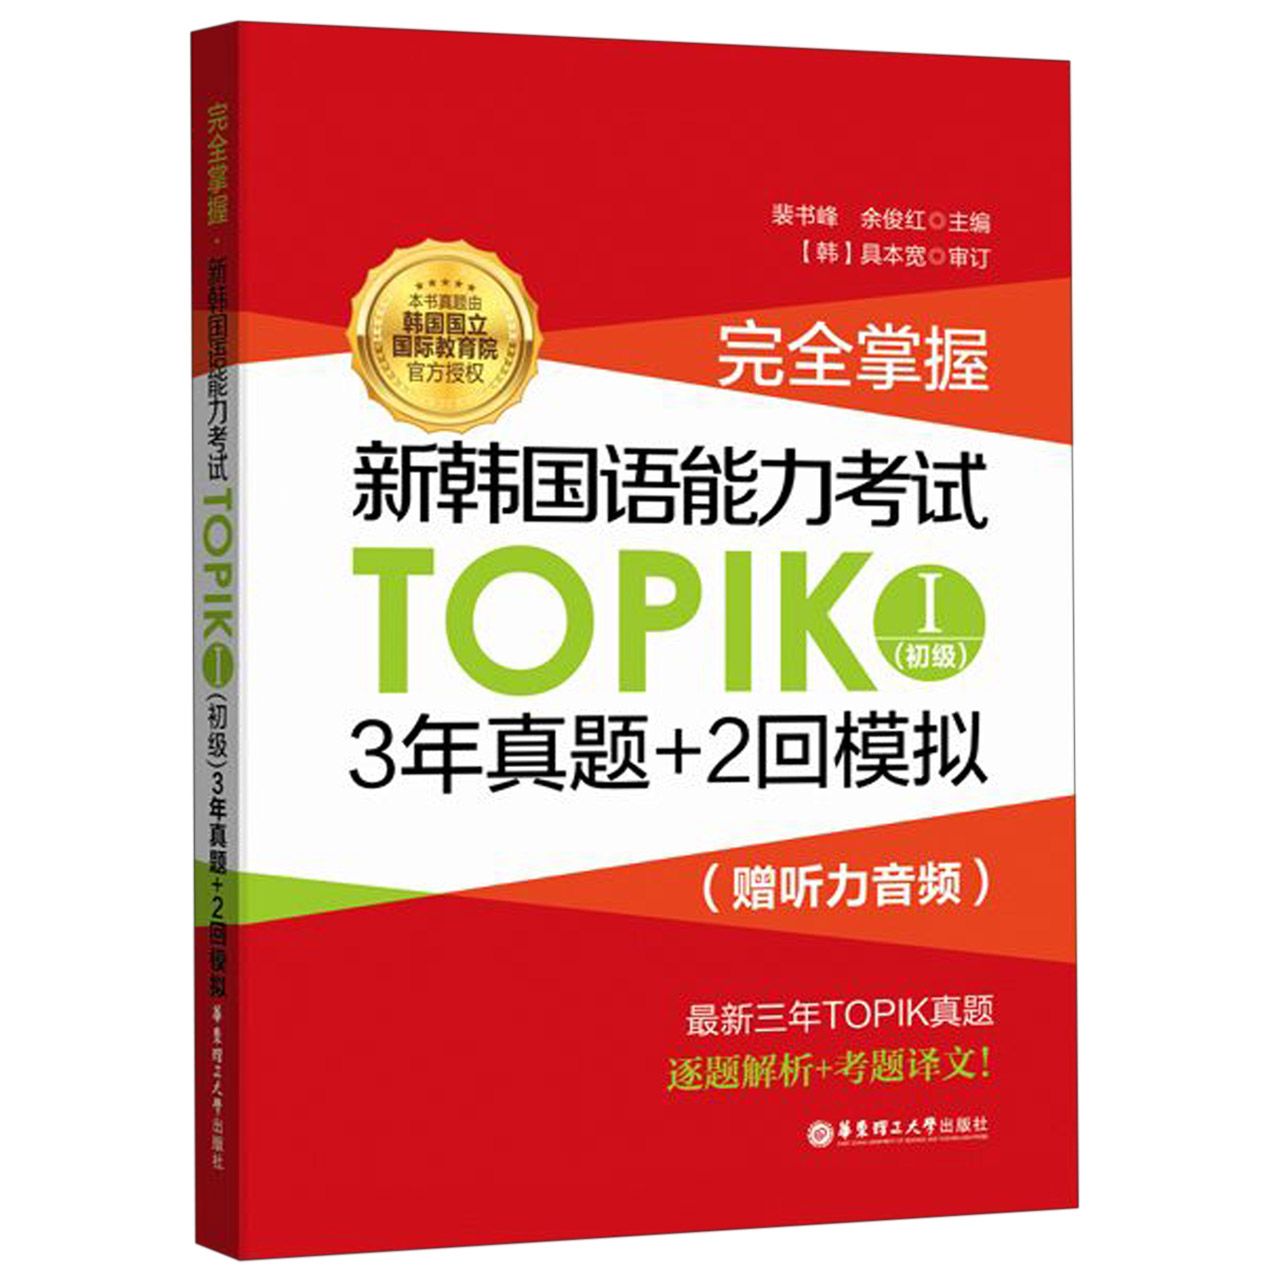 包邮掌握新韩国语能力TOPIK(Ⅰ初级)裴书峰 9787562857600华东理工大学出版社